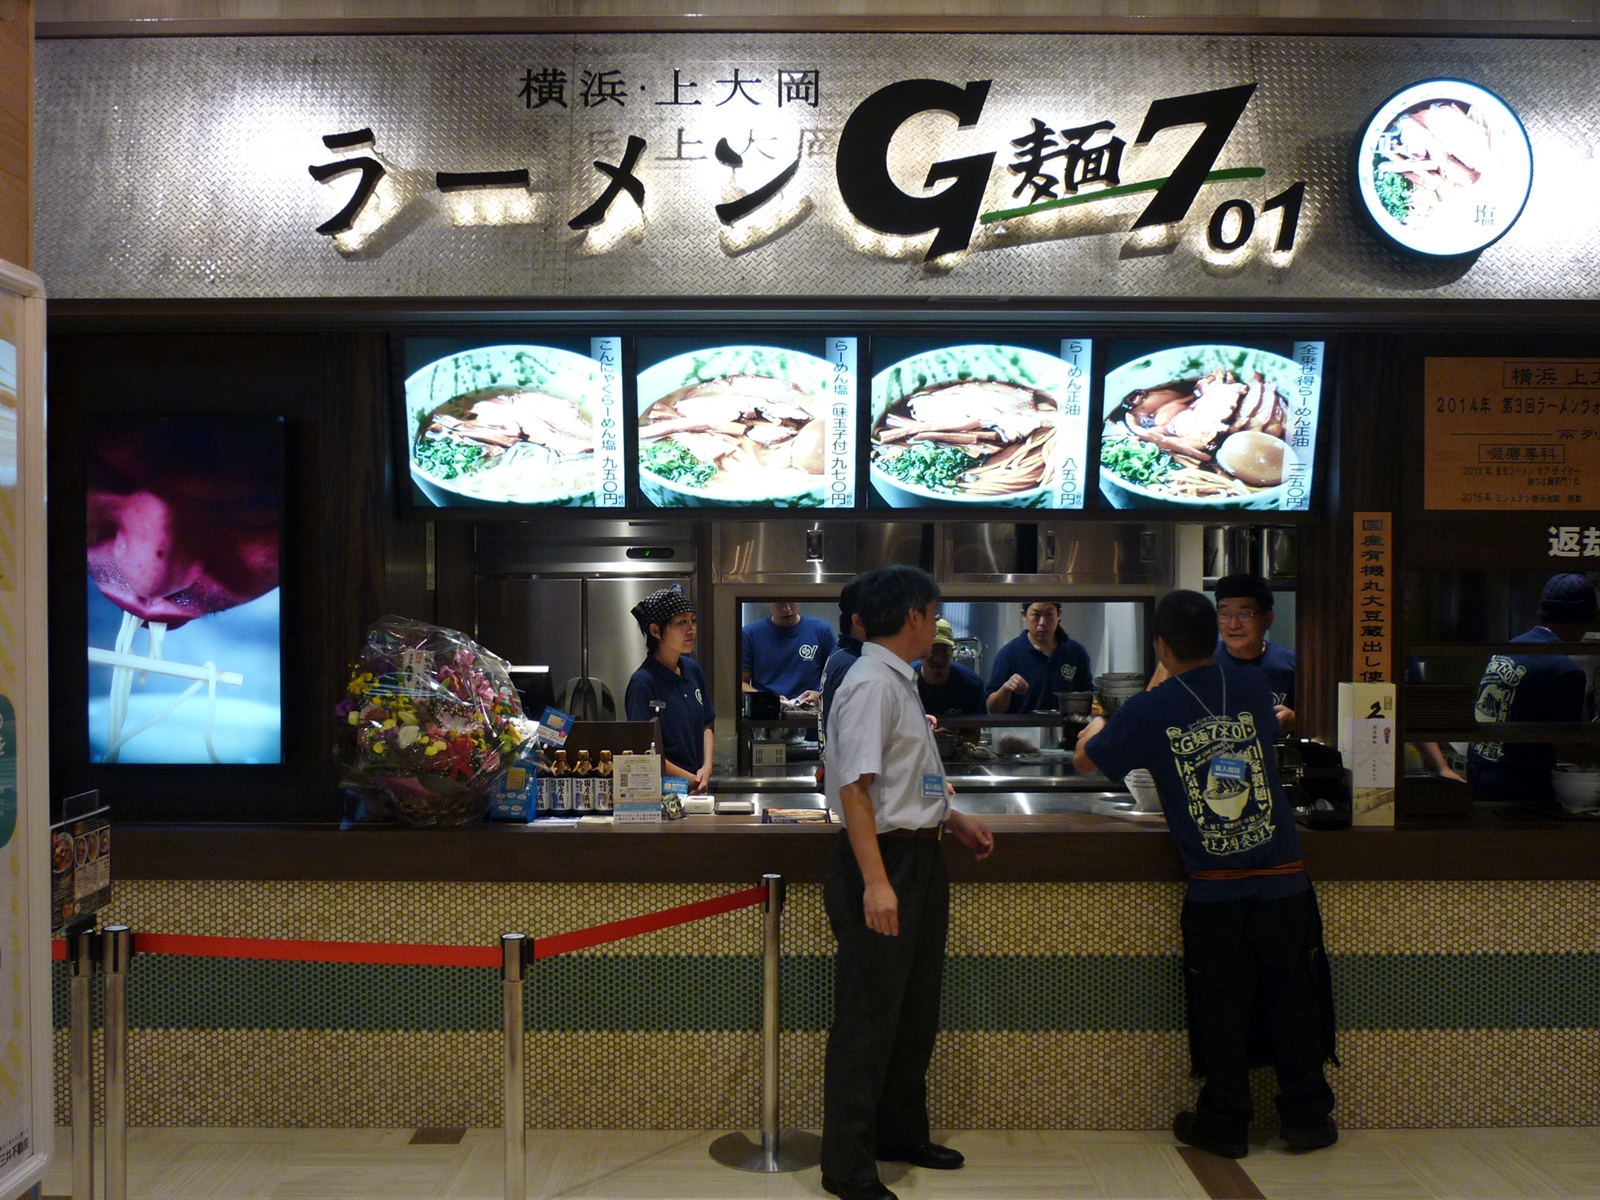 G麺7 01 ららぽーと湘南平塚は10月6日 木 正式オープン ロジウラーメン